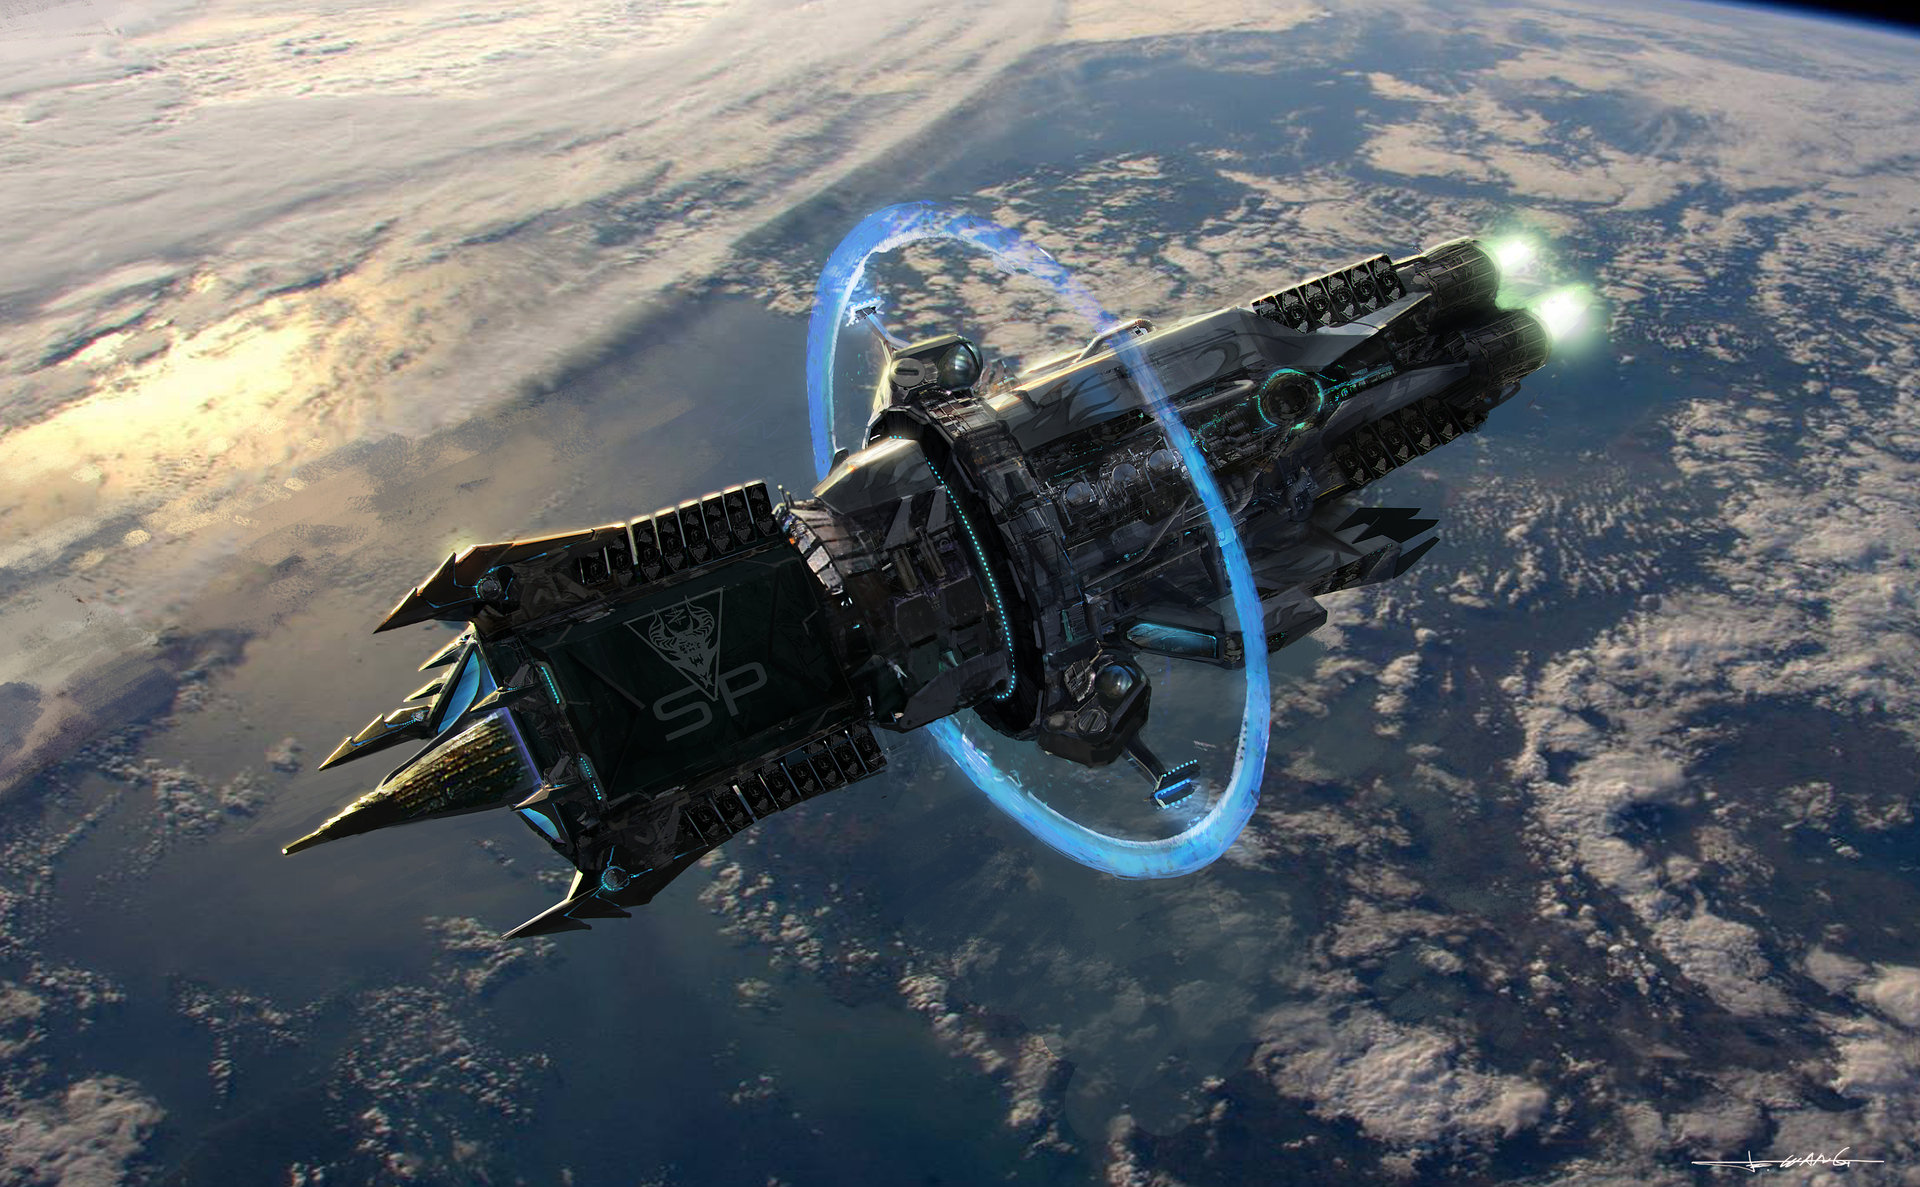 Скачать обои бесплатно Космический Корабль, Научная Фантастика картинка на рабочий стол ПК